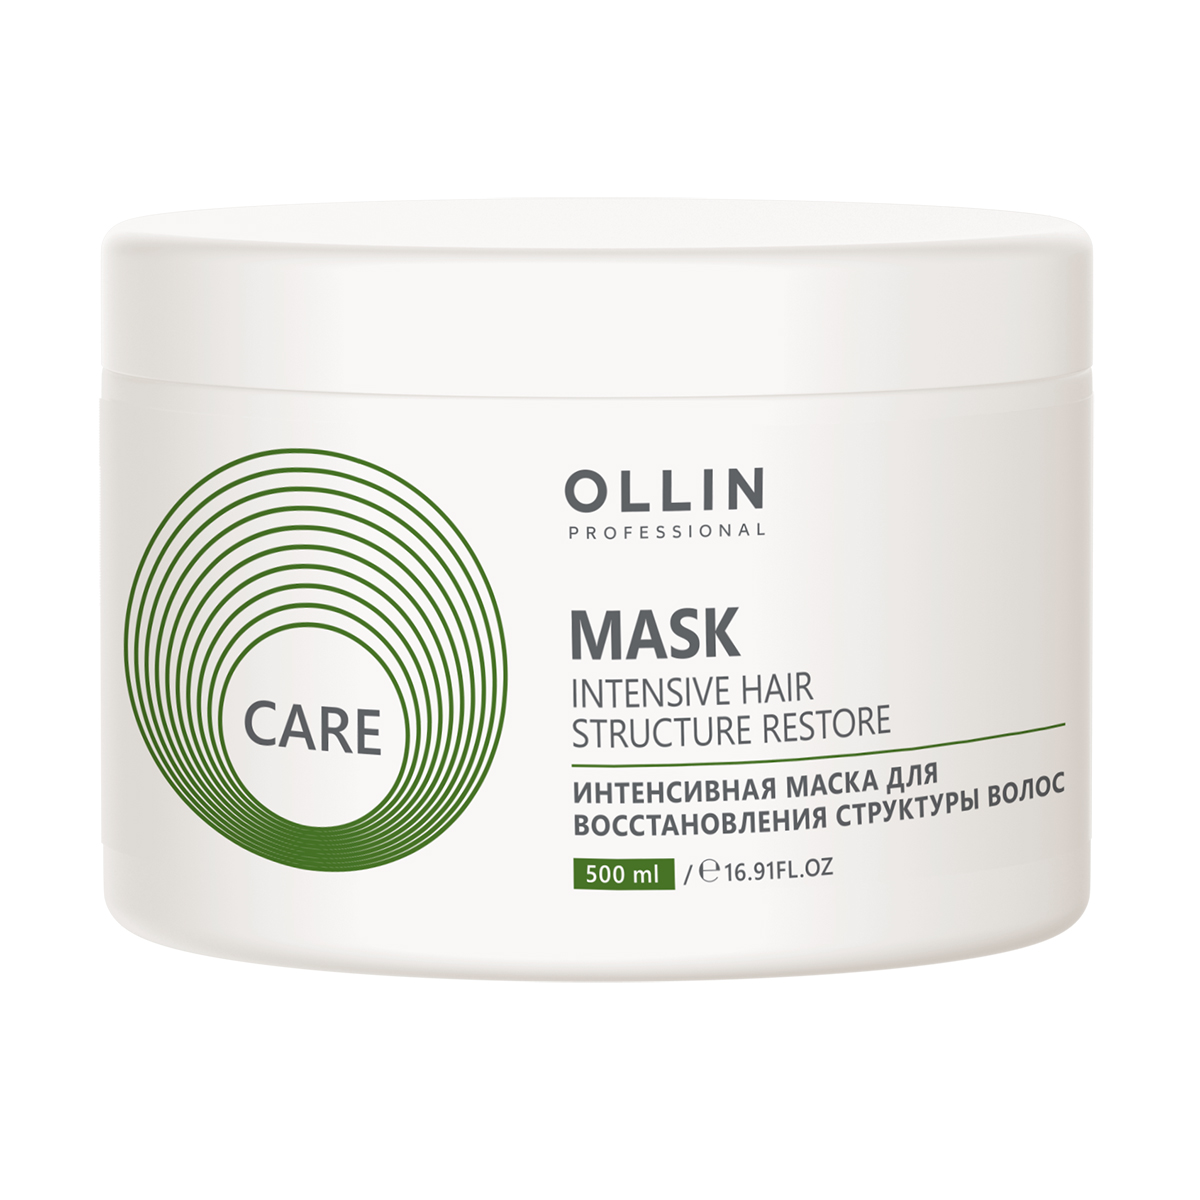 Care Интенсивная маска для восстановления структуры волос, 500 мл, OLLIN